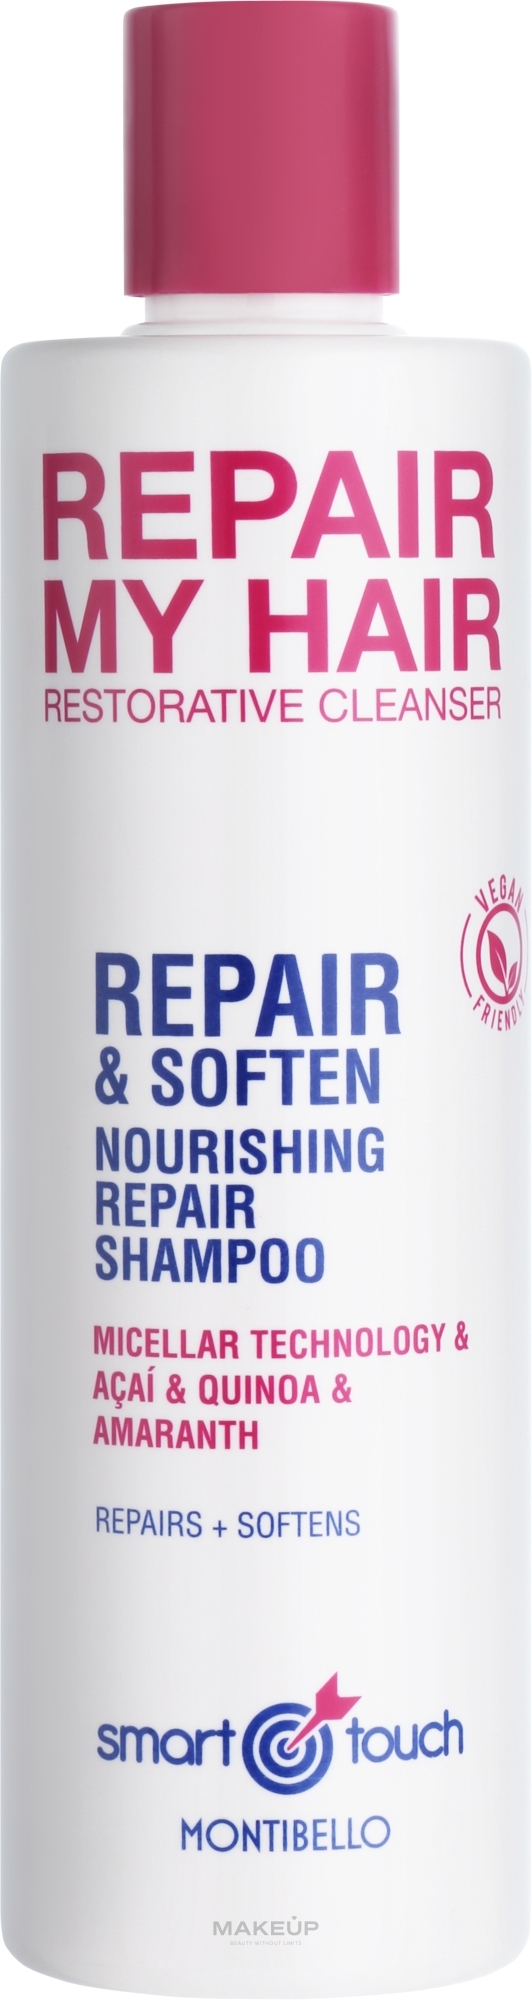 Міцелярний шампунь для волосся - Montibello Smart Touch Repair My Hair Shampoo — фото 300ml